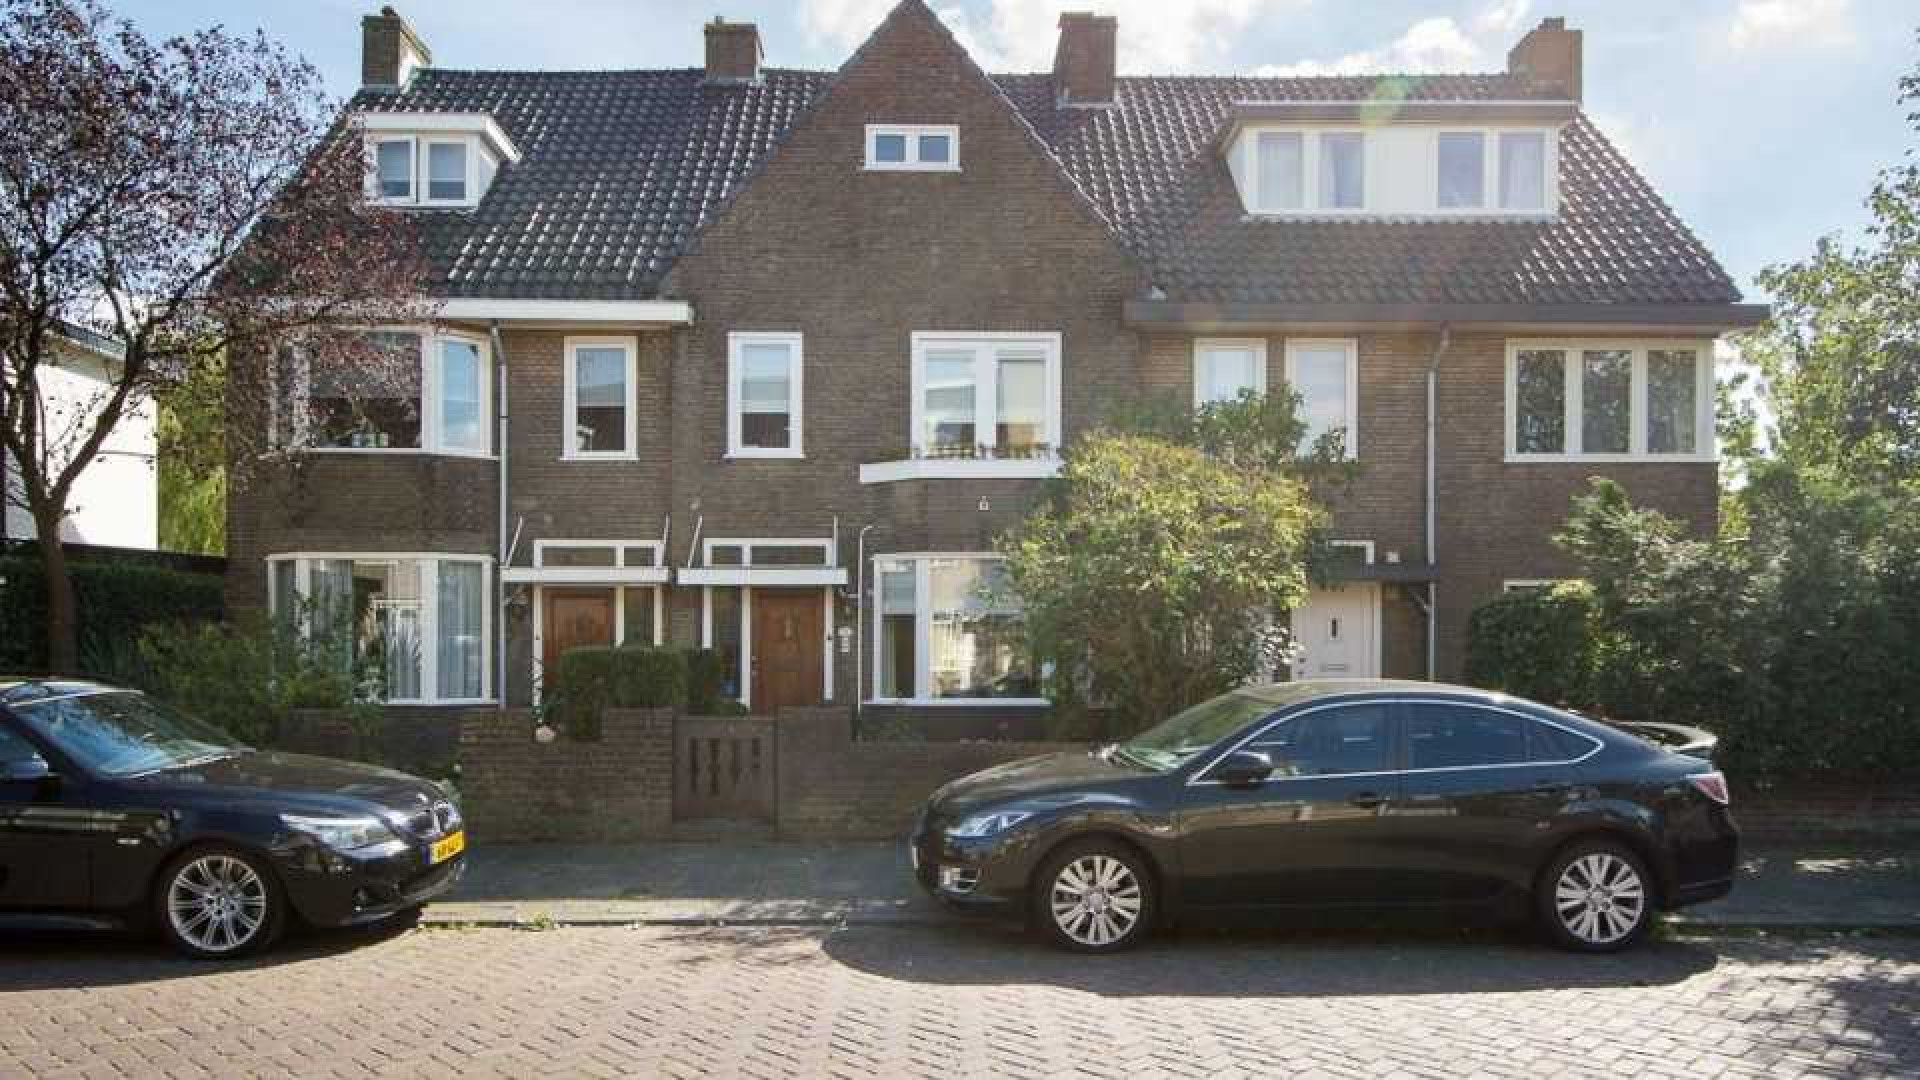 Aukje van Ginneken koopt luxe eengezinswoning in Breda. Zie foto's 1